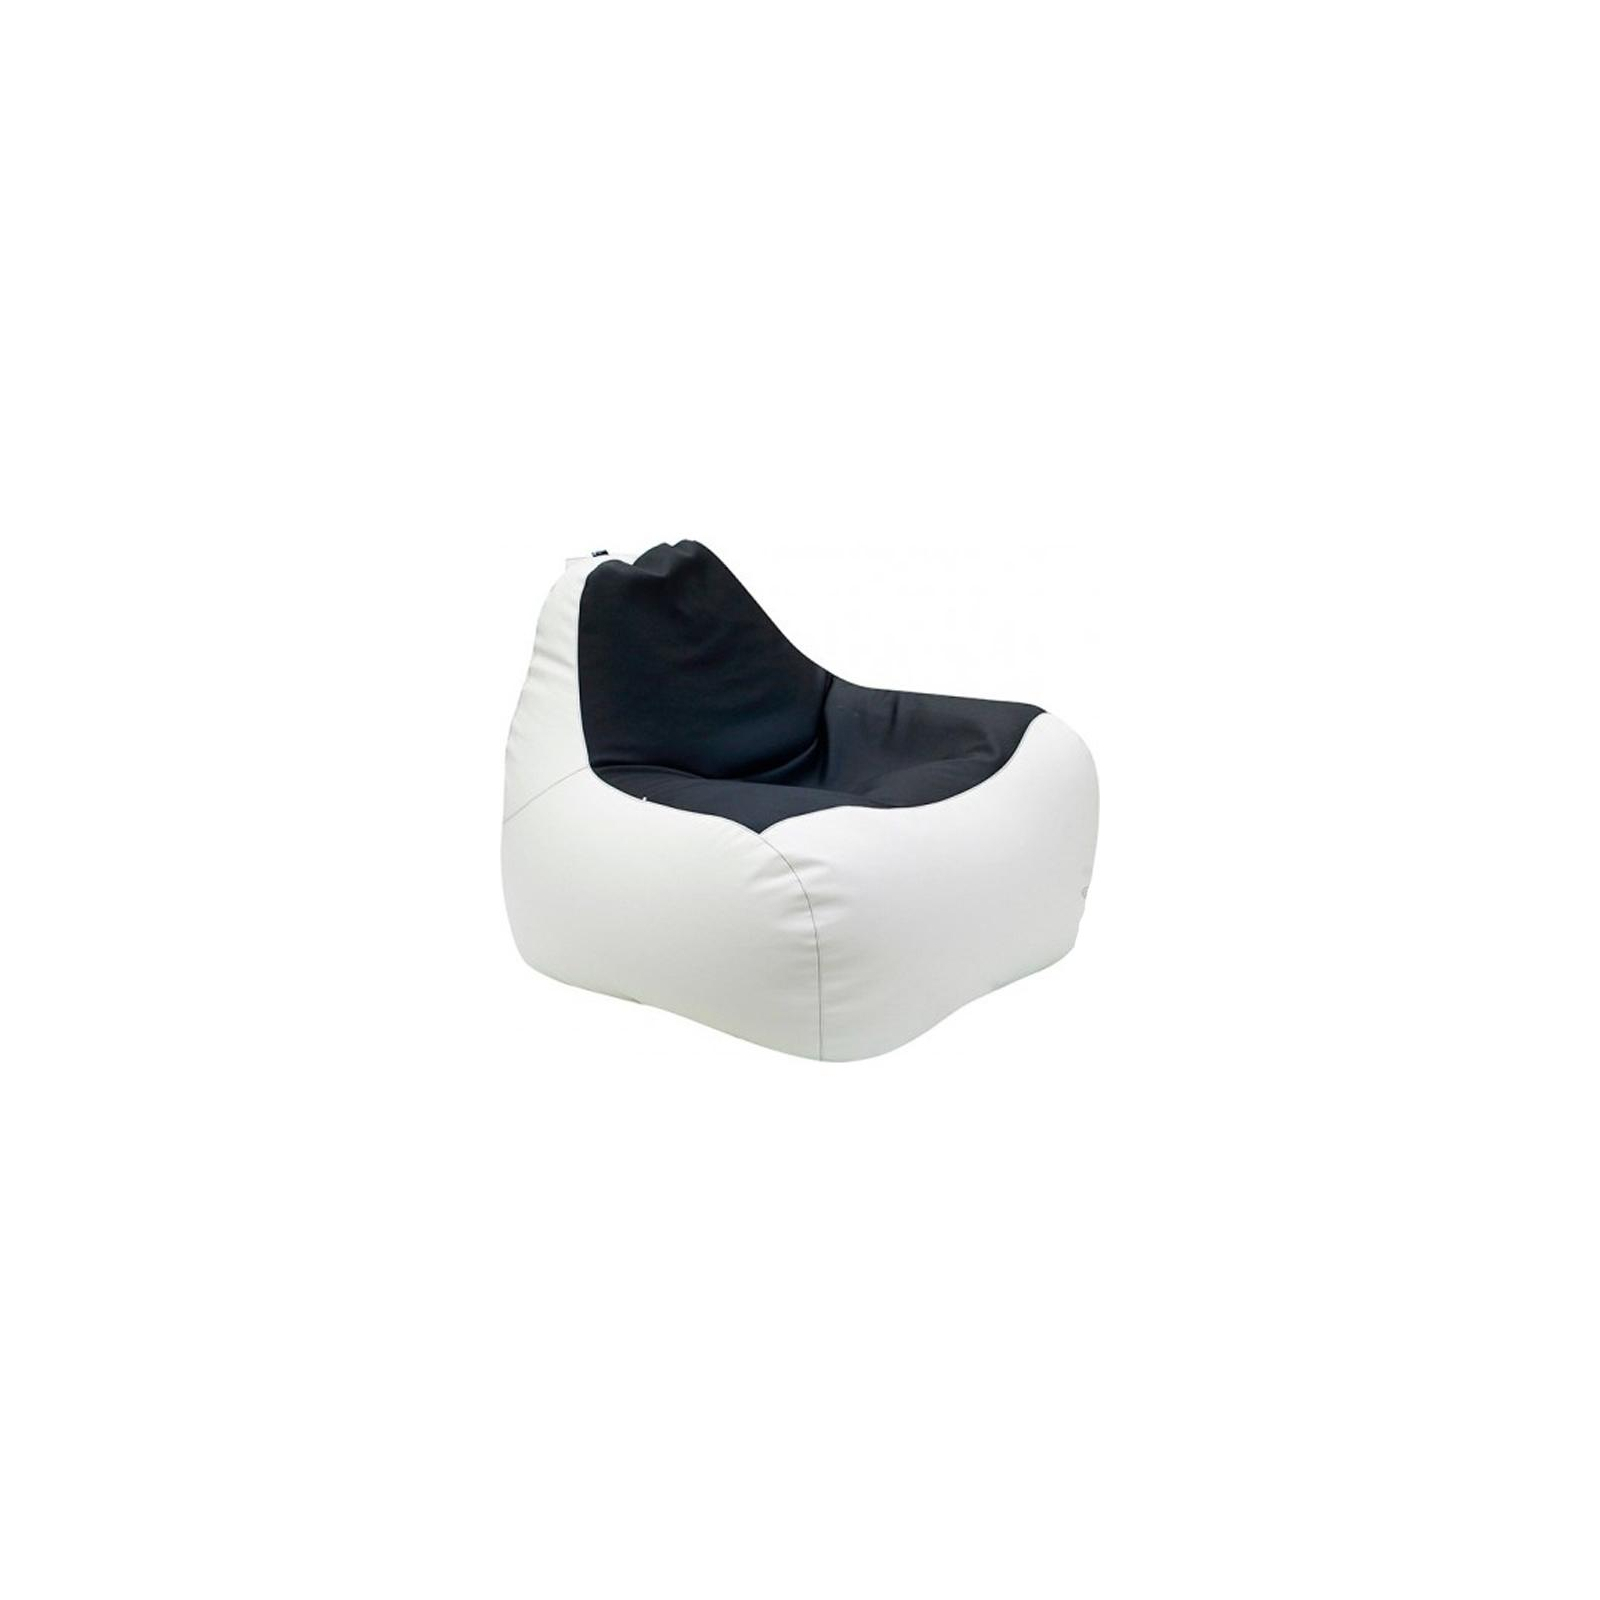 Кресло-мешок Примтекс плюс кресло-груша Simba H-2200/D-5 М White-Black (Simba H-2200/D-5 М White-Black)